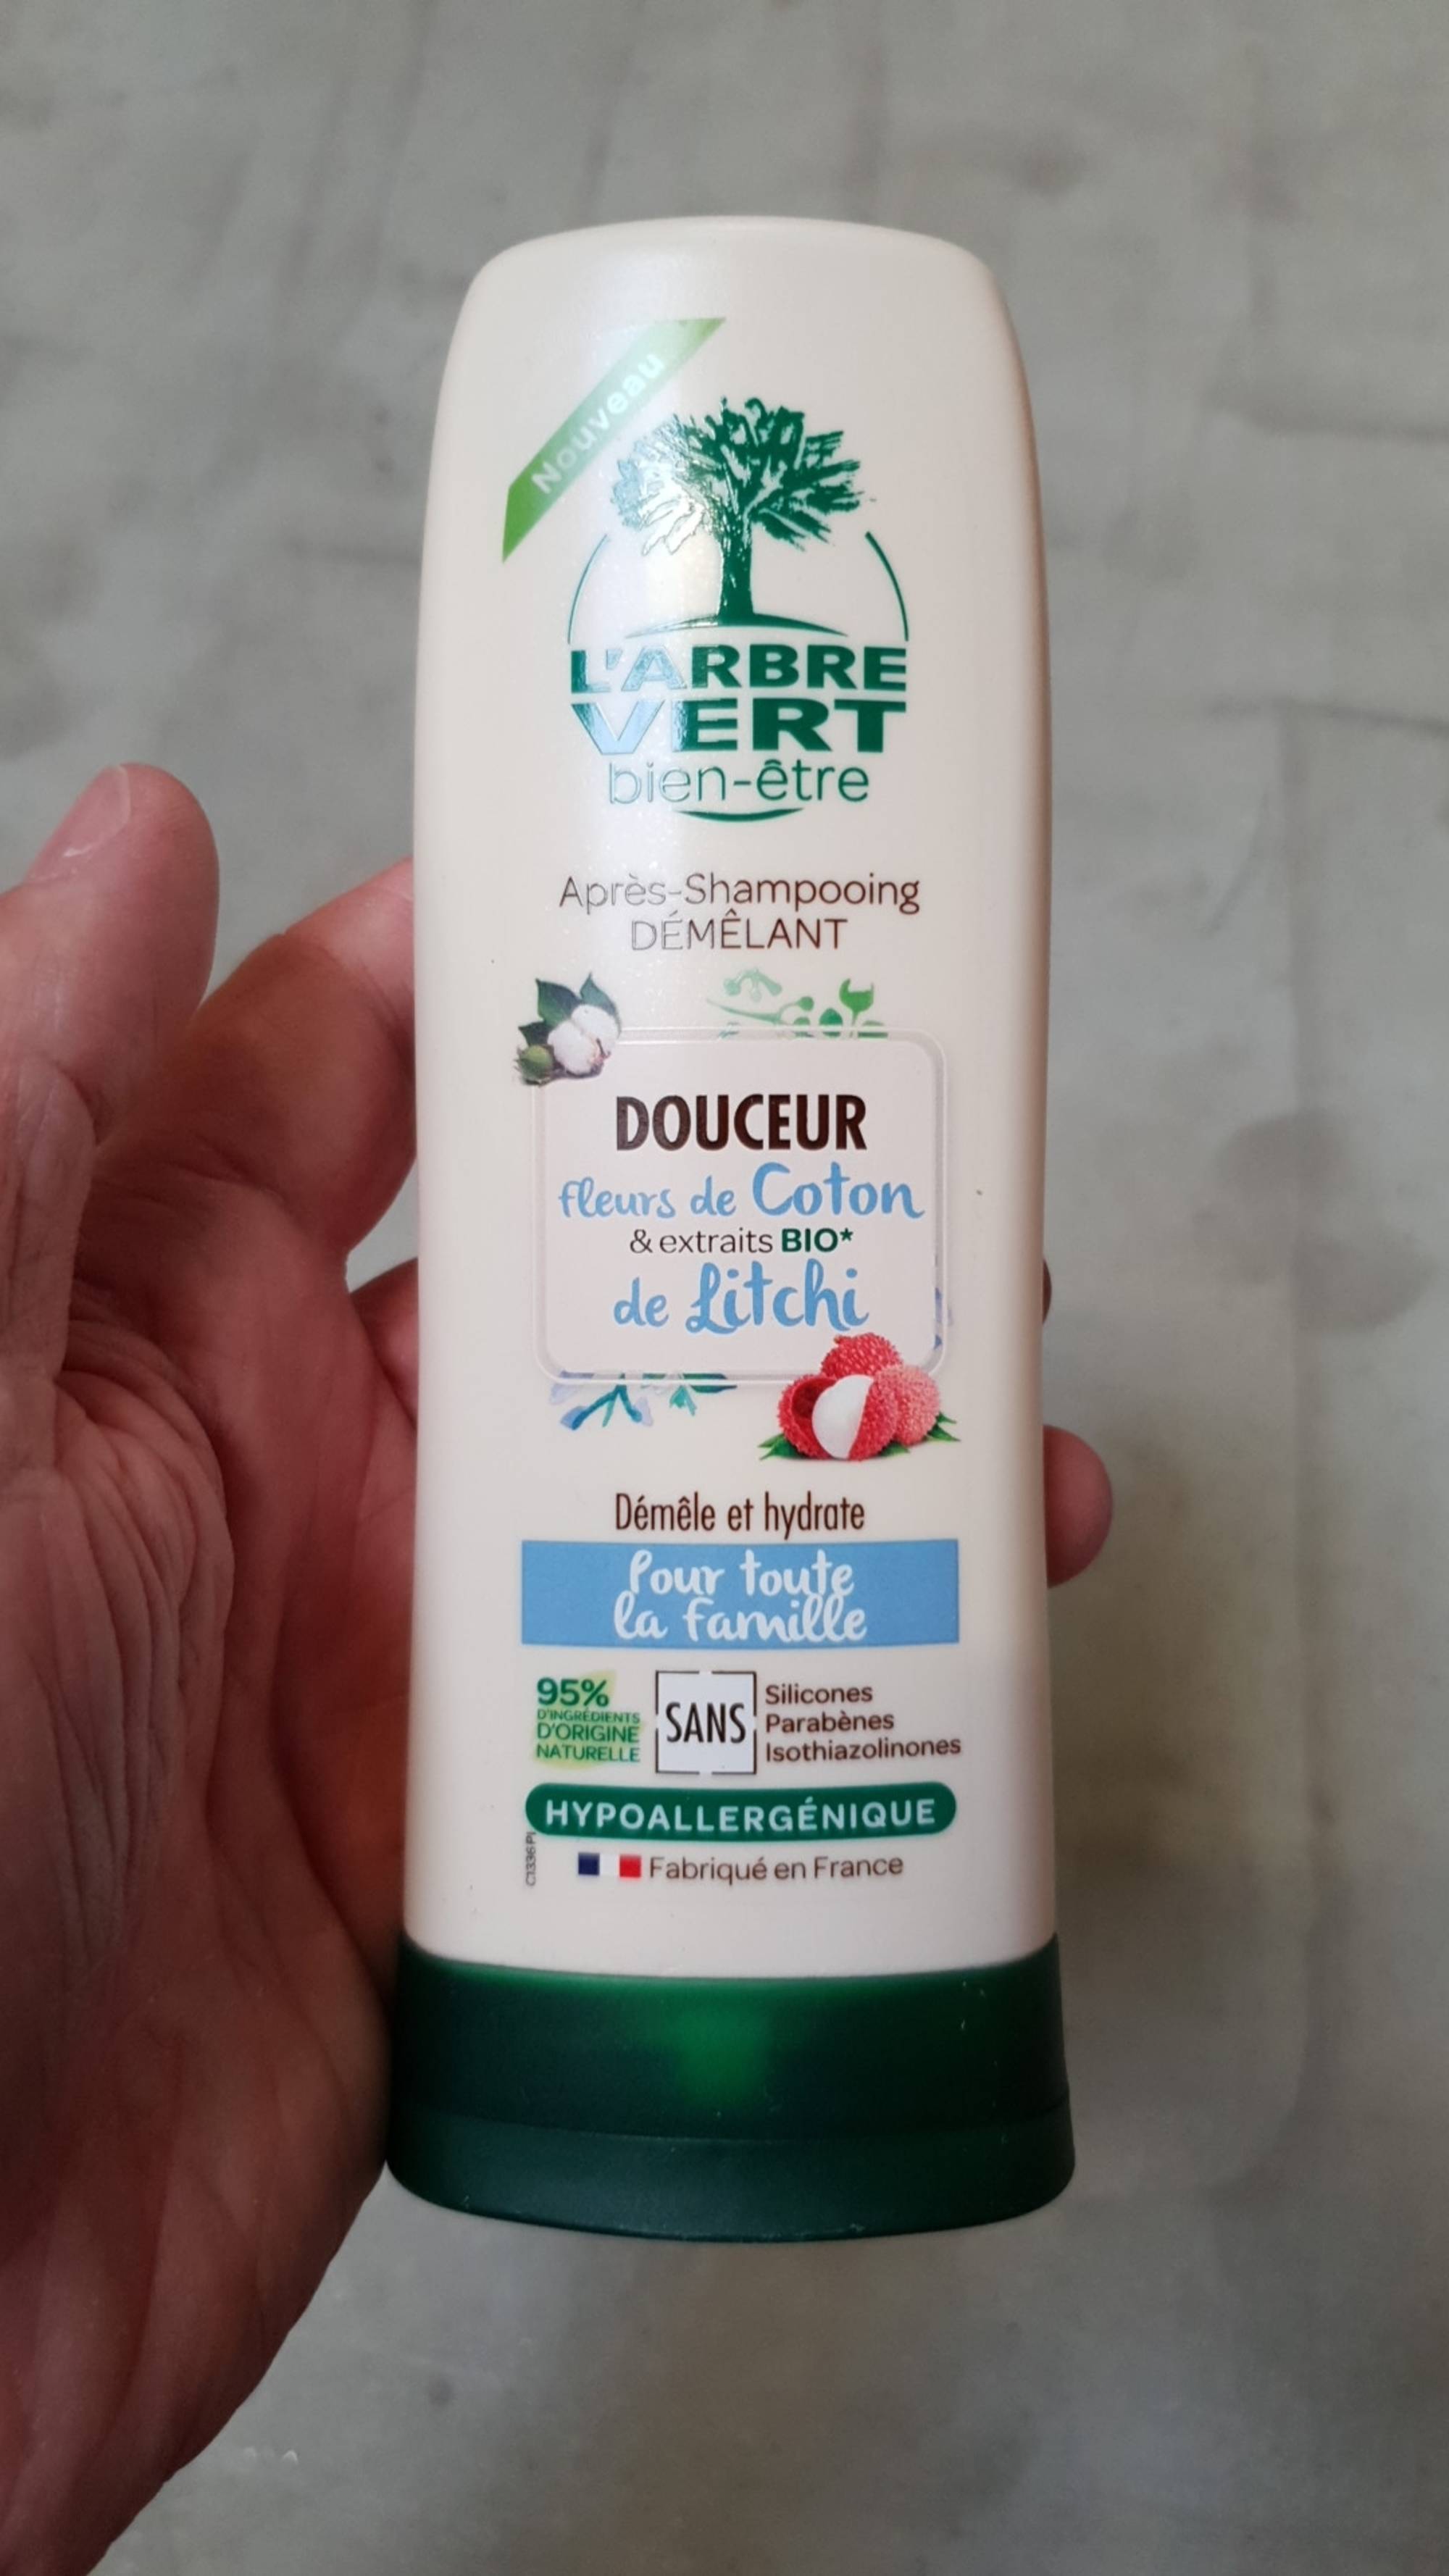 L'ARBRE VERT - Après-shampooing démêlant douceur